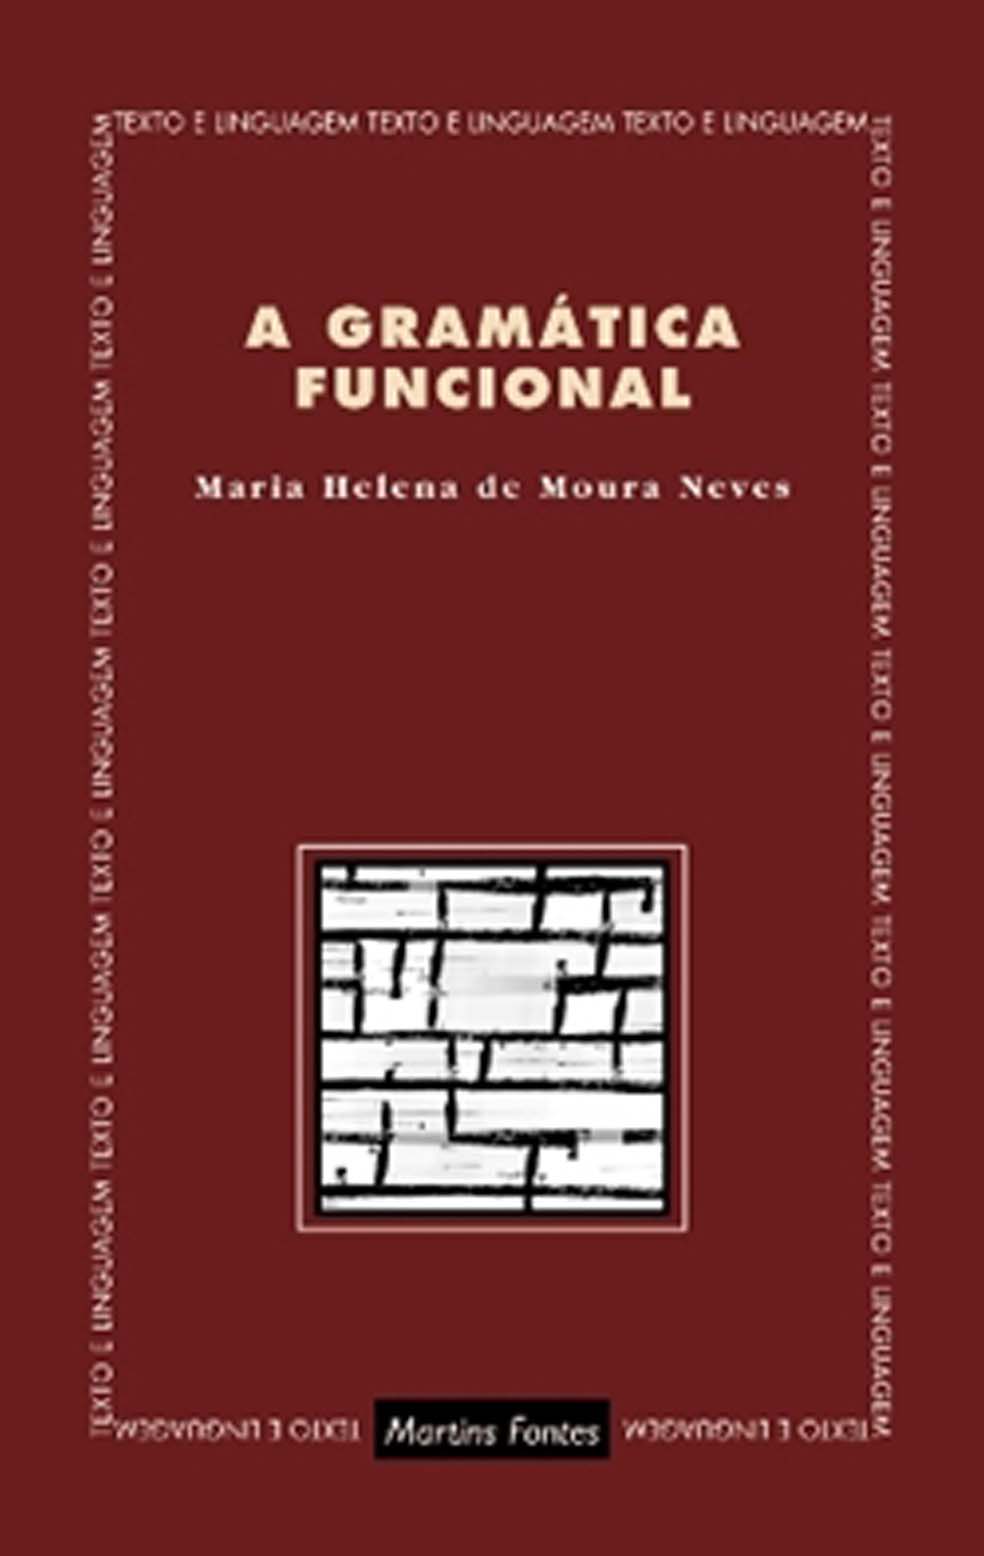 Gramática funcional, A  - Martins Fontes